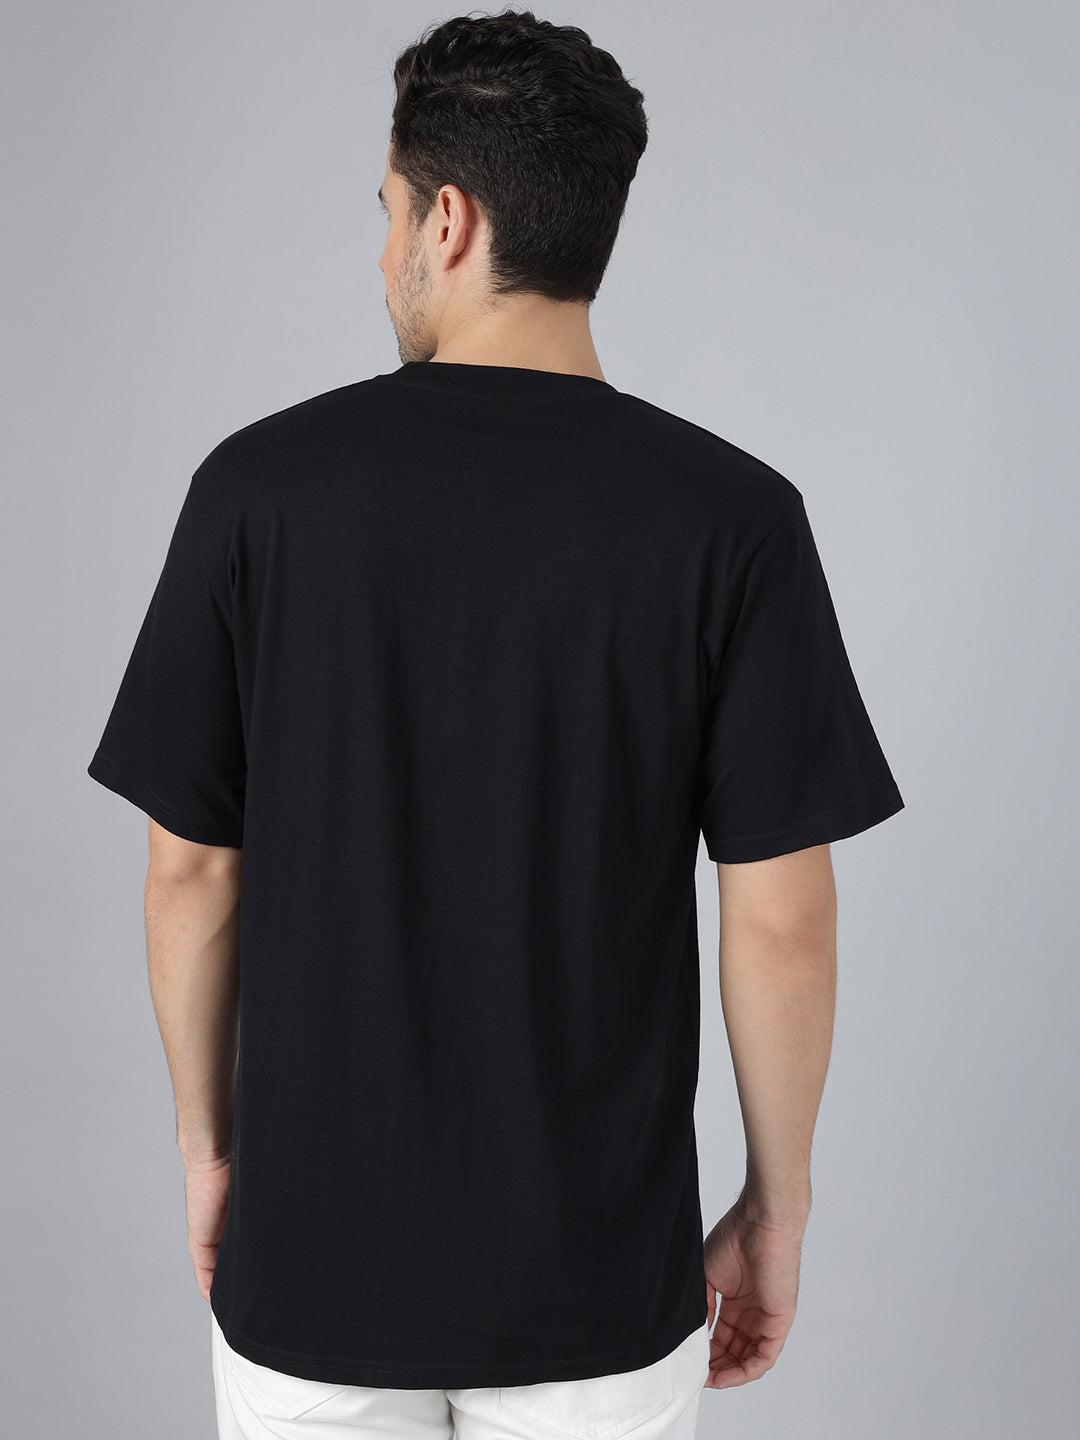 Sakuna Black Regular T-Shirts